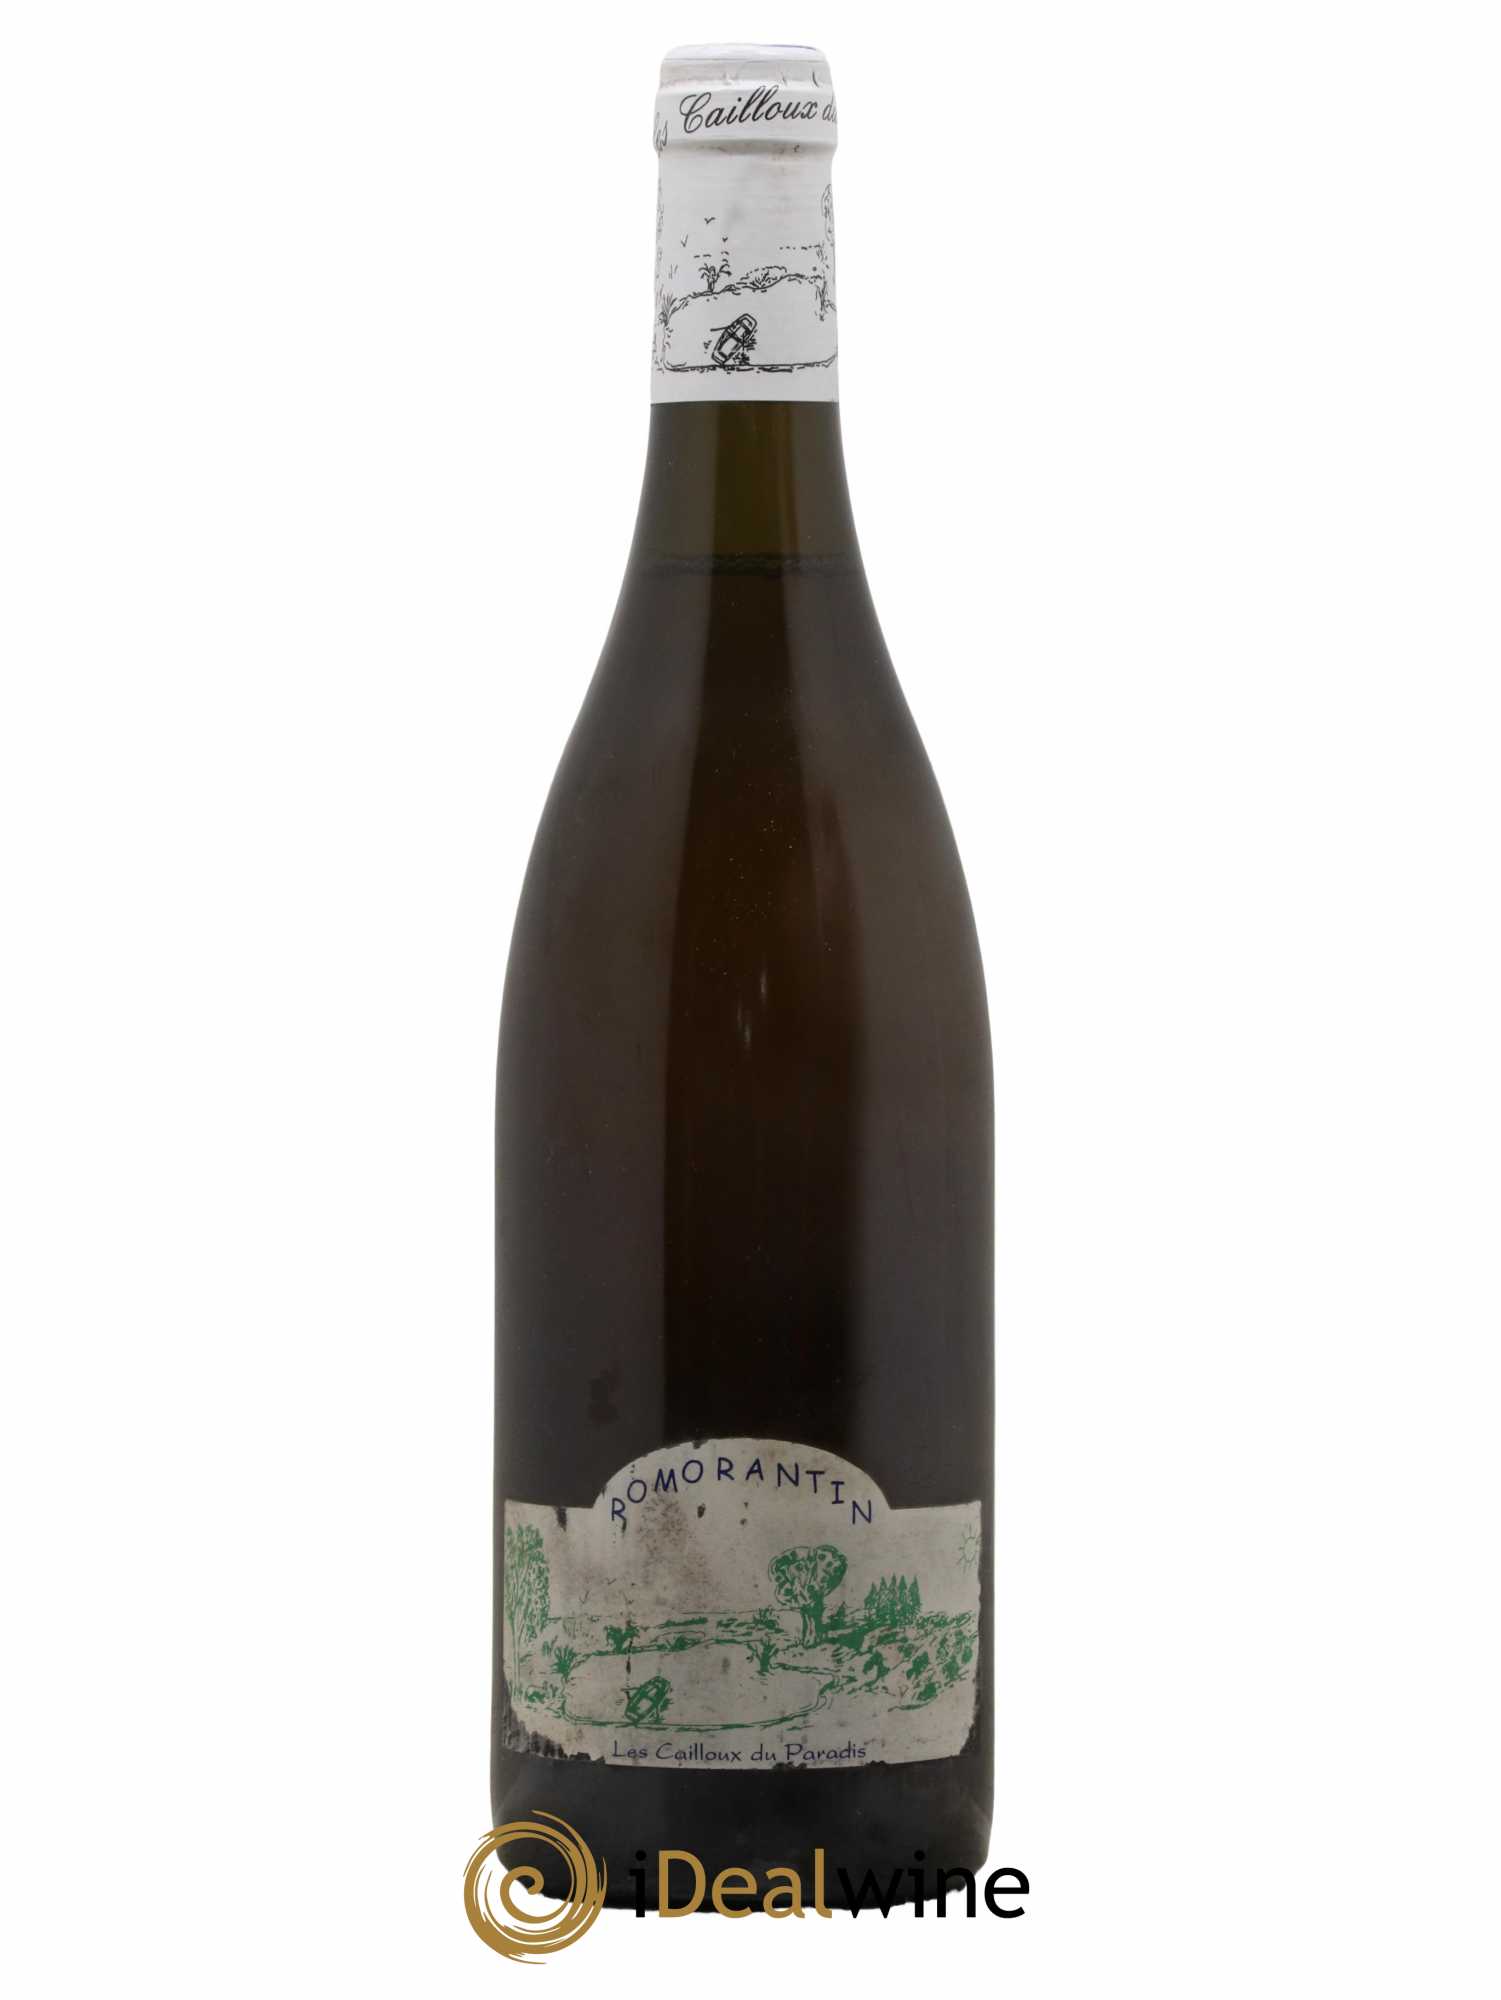 Kaufen Sie Vin de France Ramorantin les Cailloux du Paradis Courtois 2006  (lot: 1012)